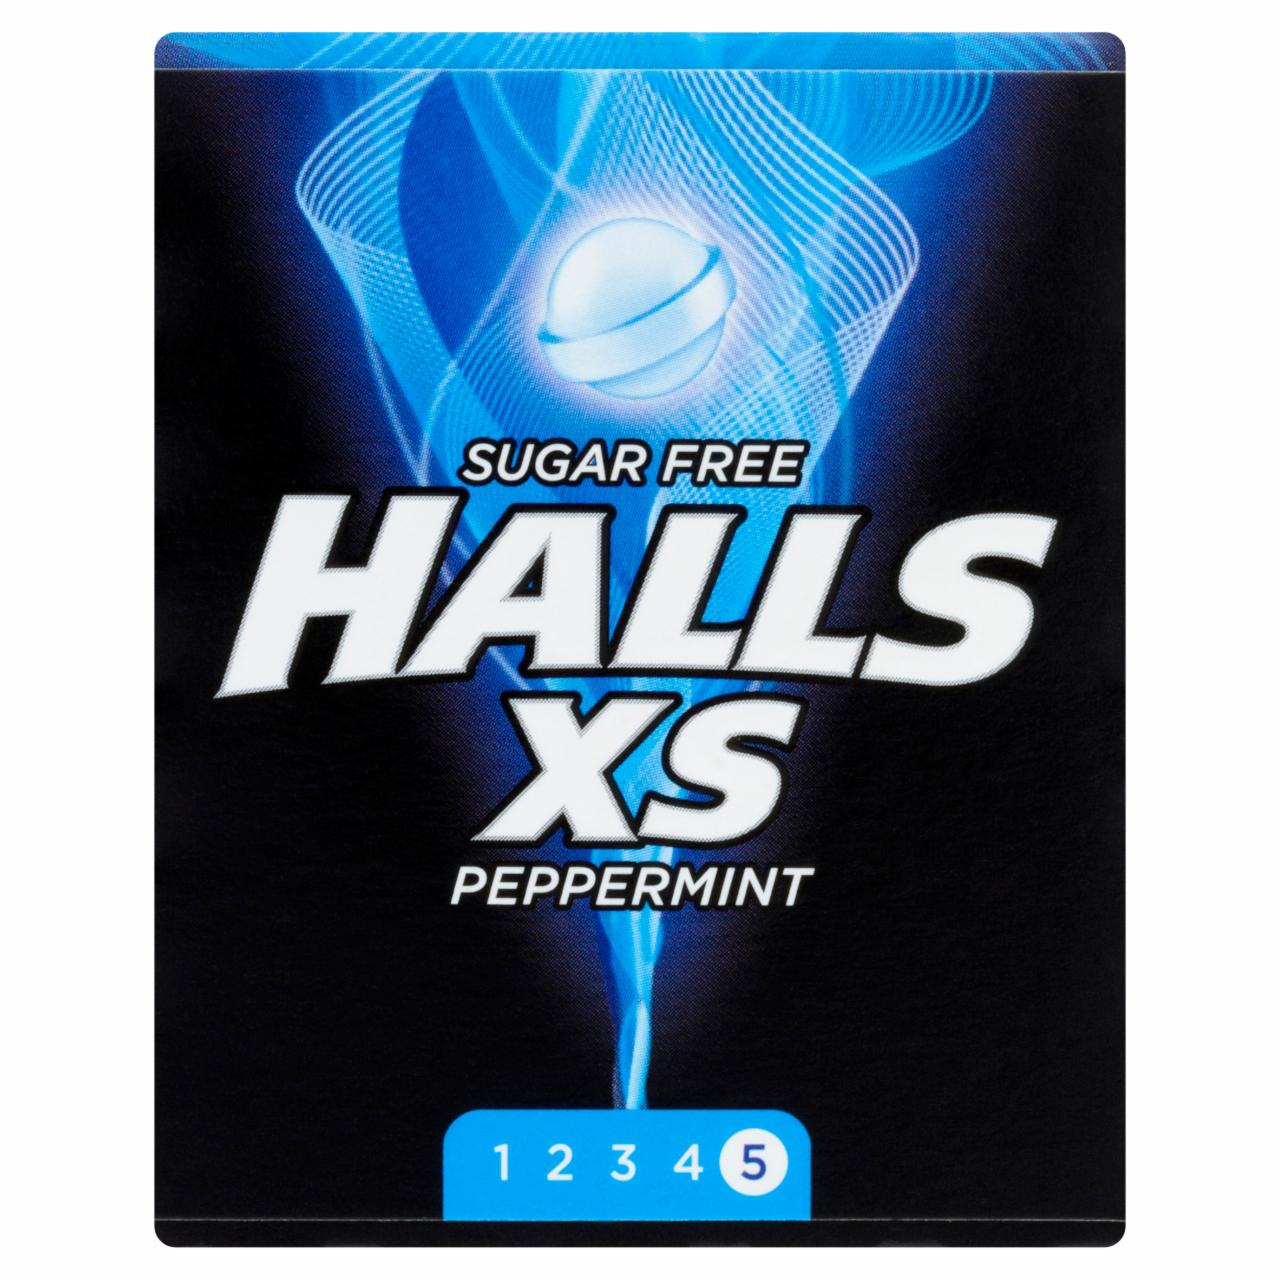 Zdjęcia - Halls XS Peppermint Cukierki 17 g